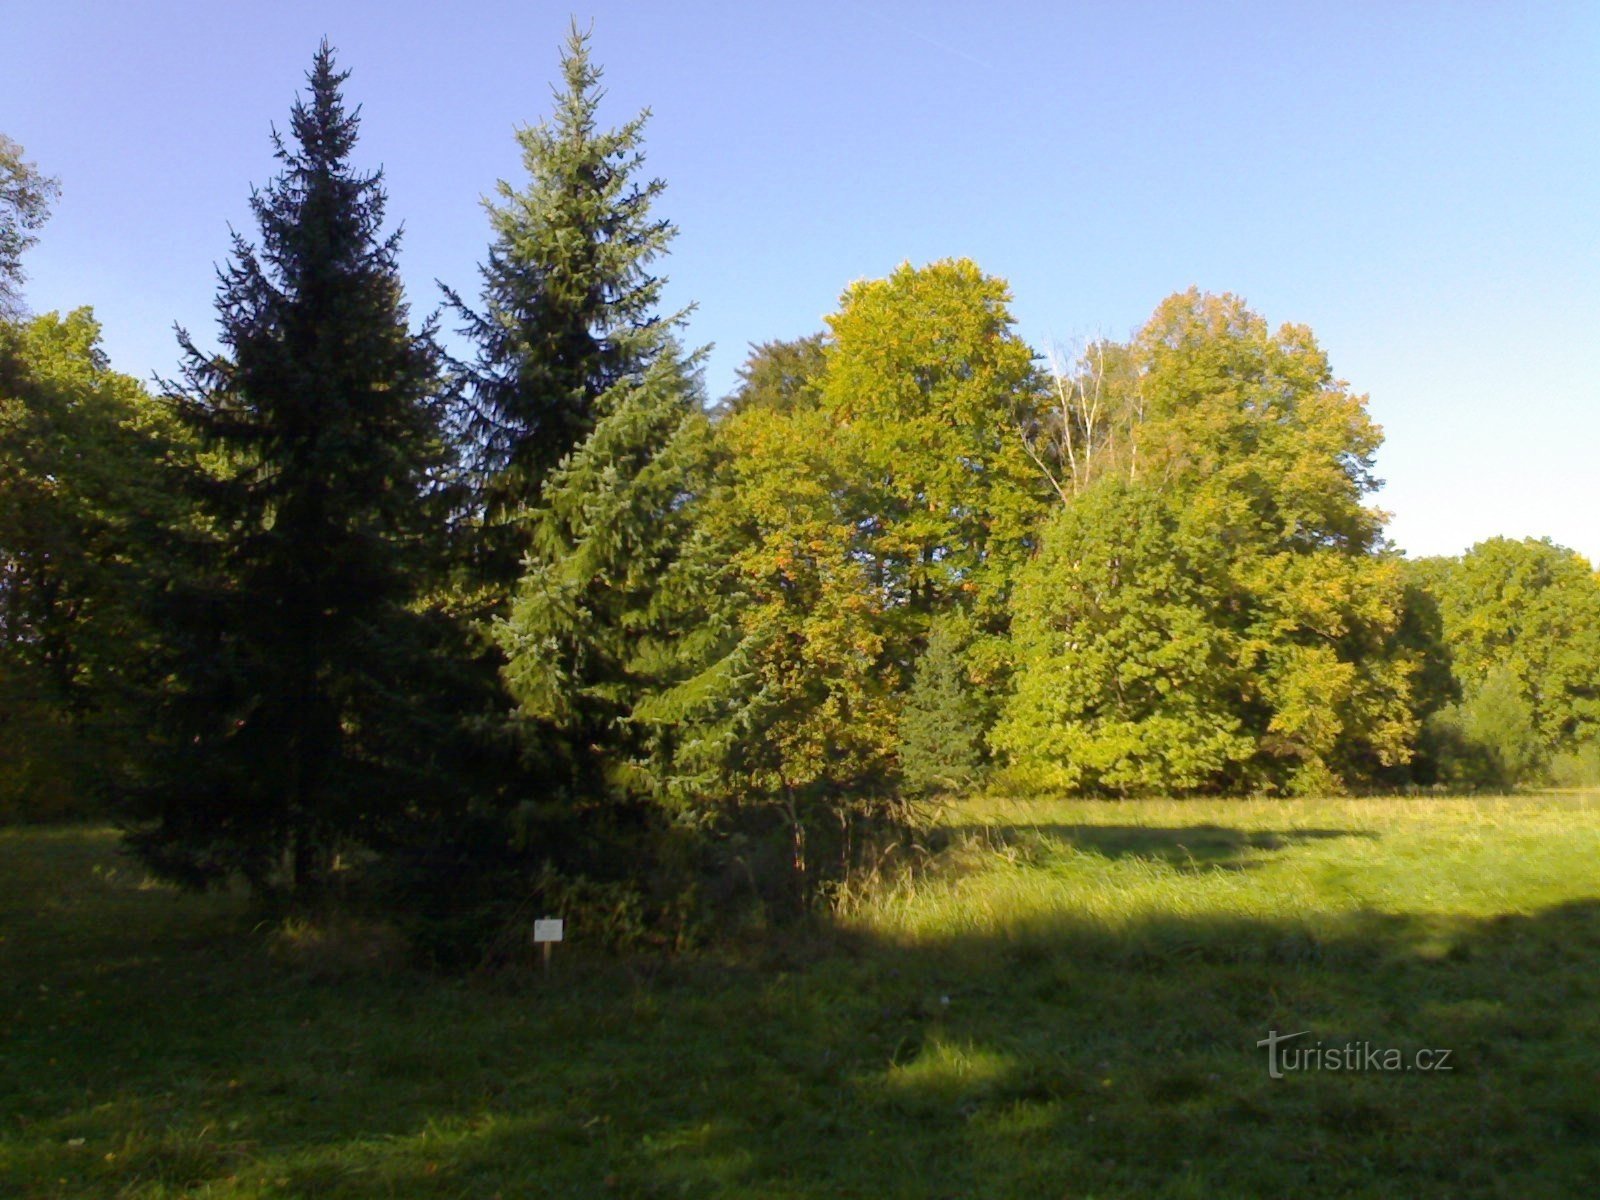 Arboretum de Vysoké Chvojno